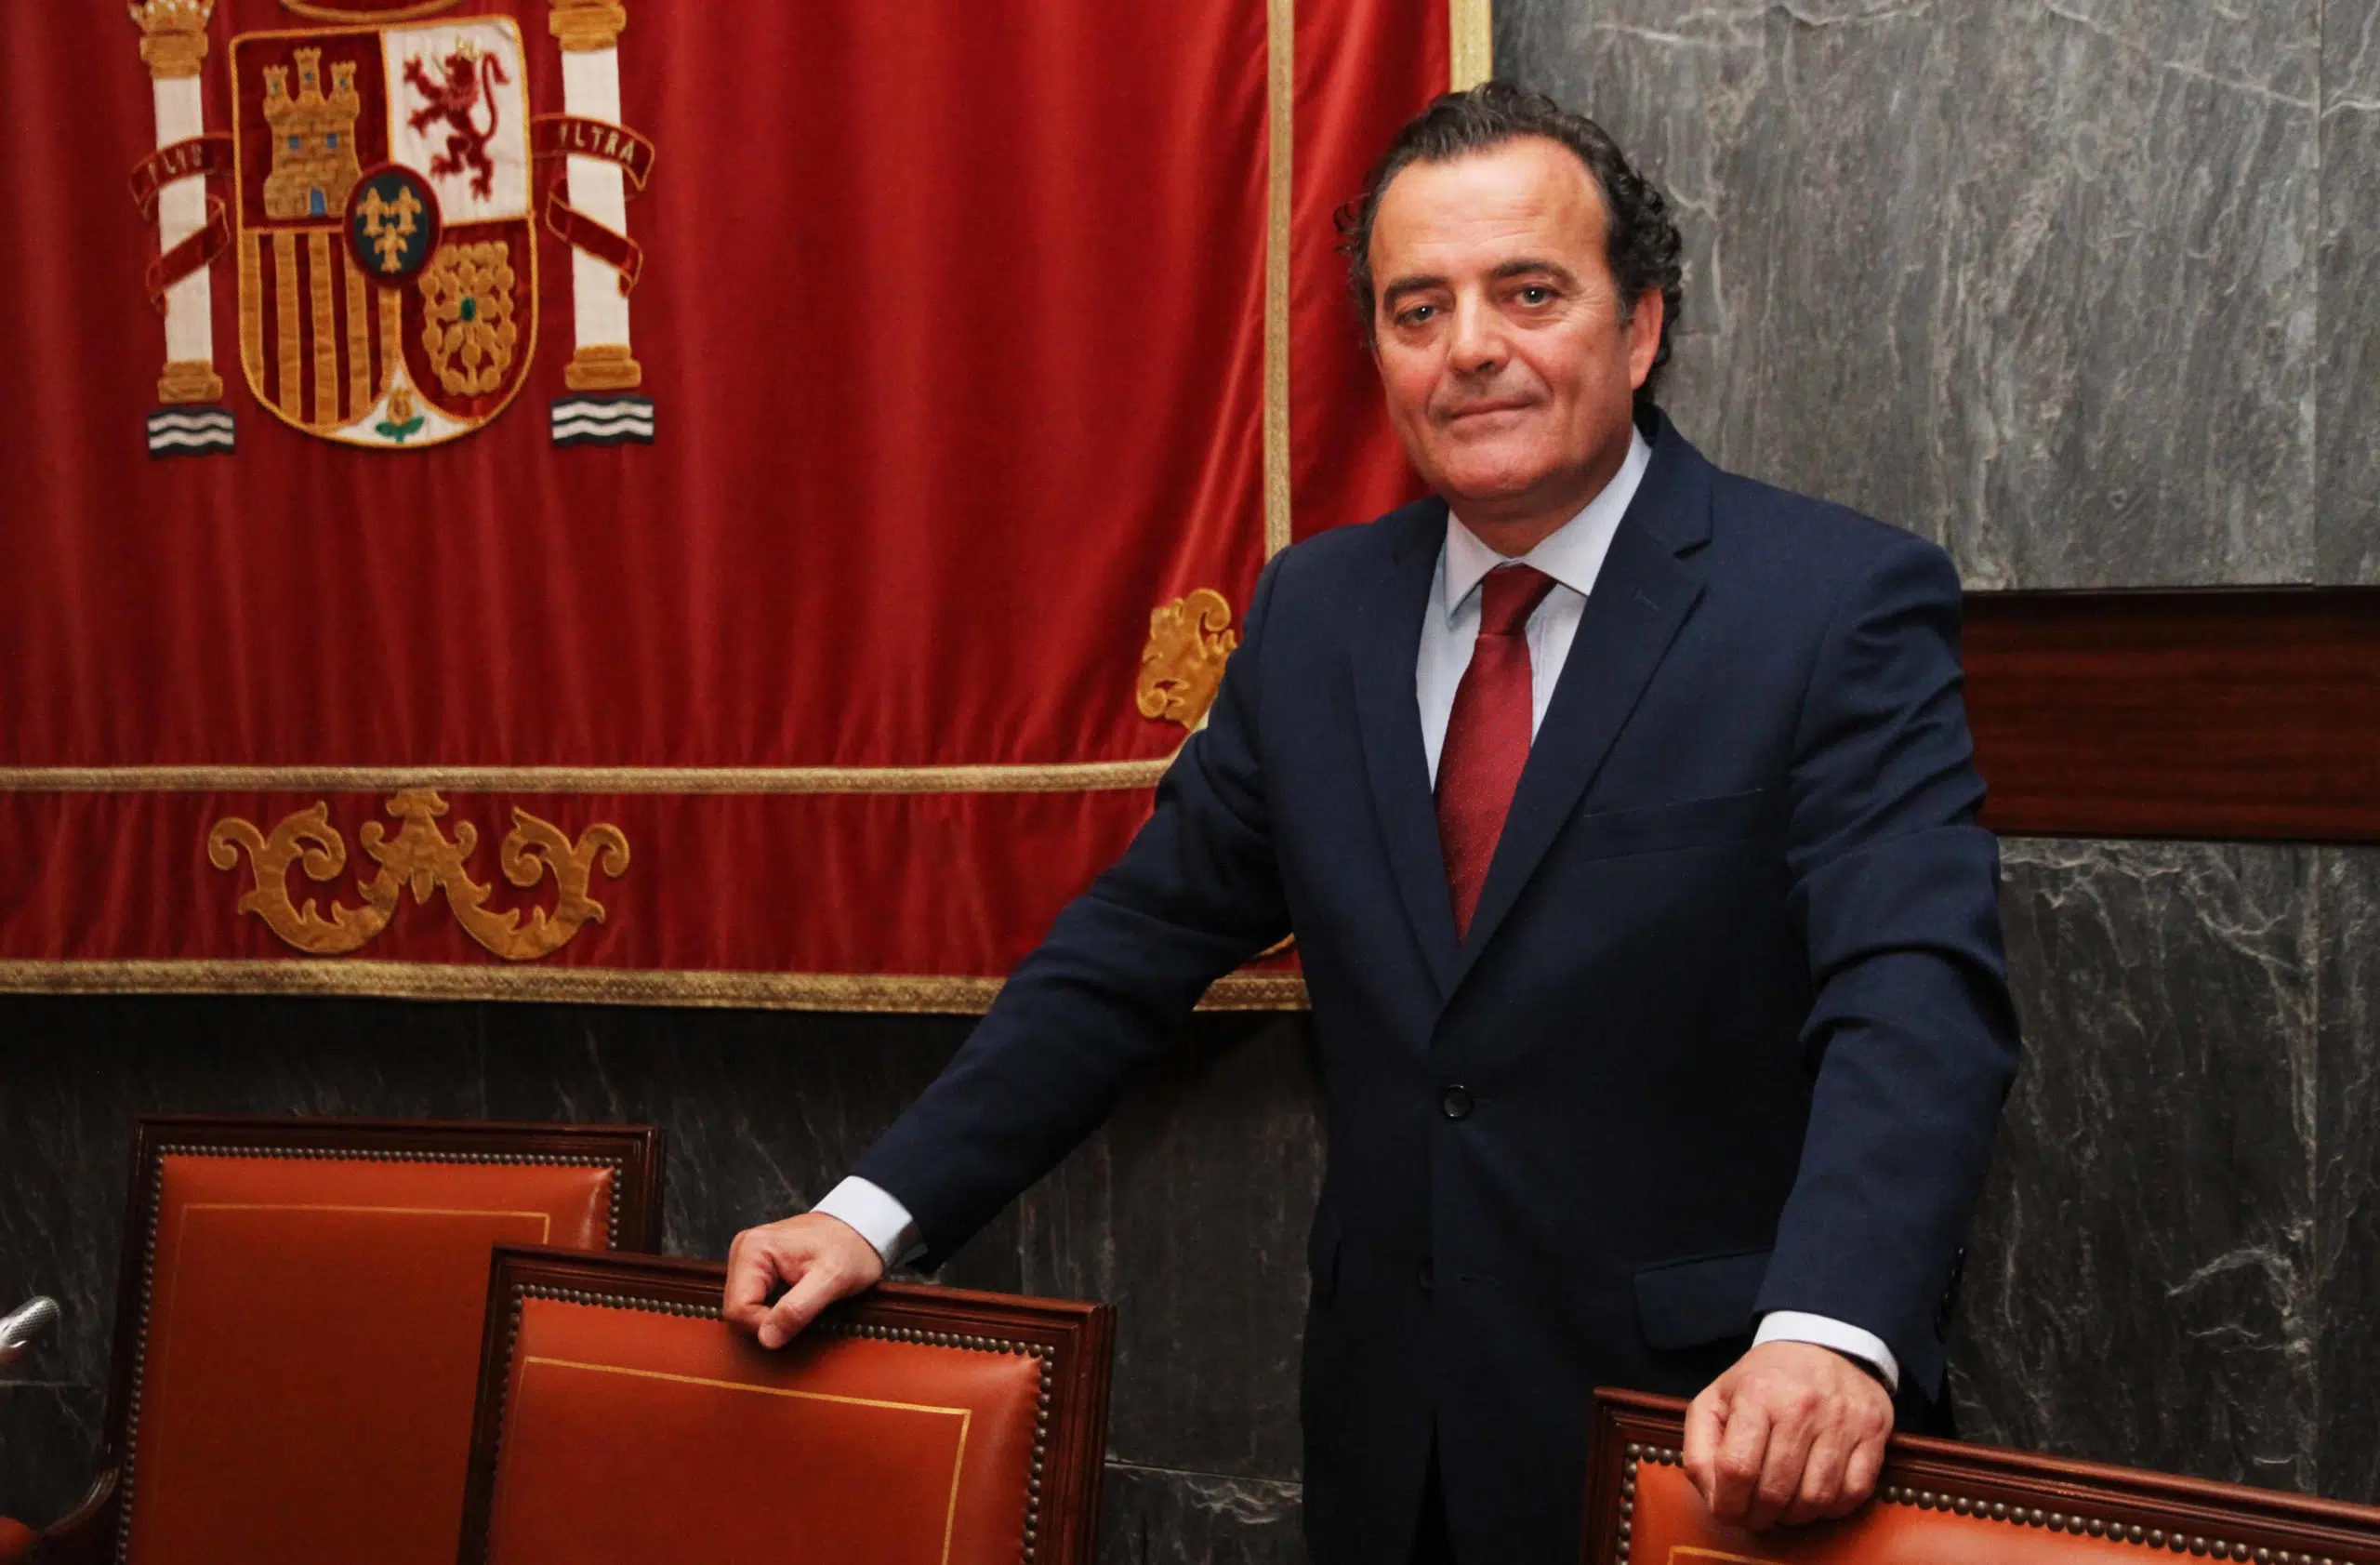 El juez Presencia recurre el nombramiento de Rouco al frente del TSJ de Castilla-La Mancha